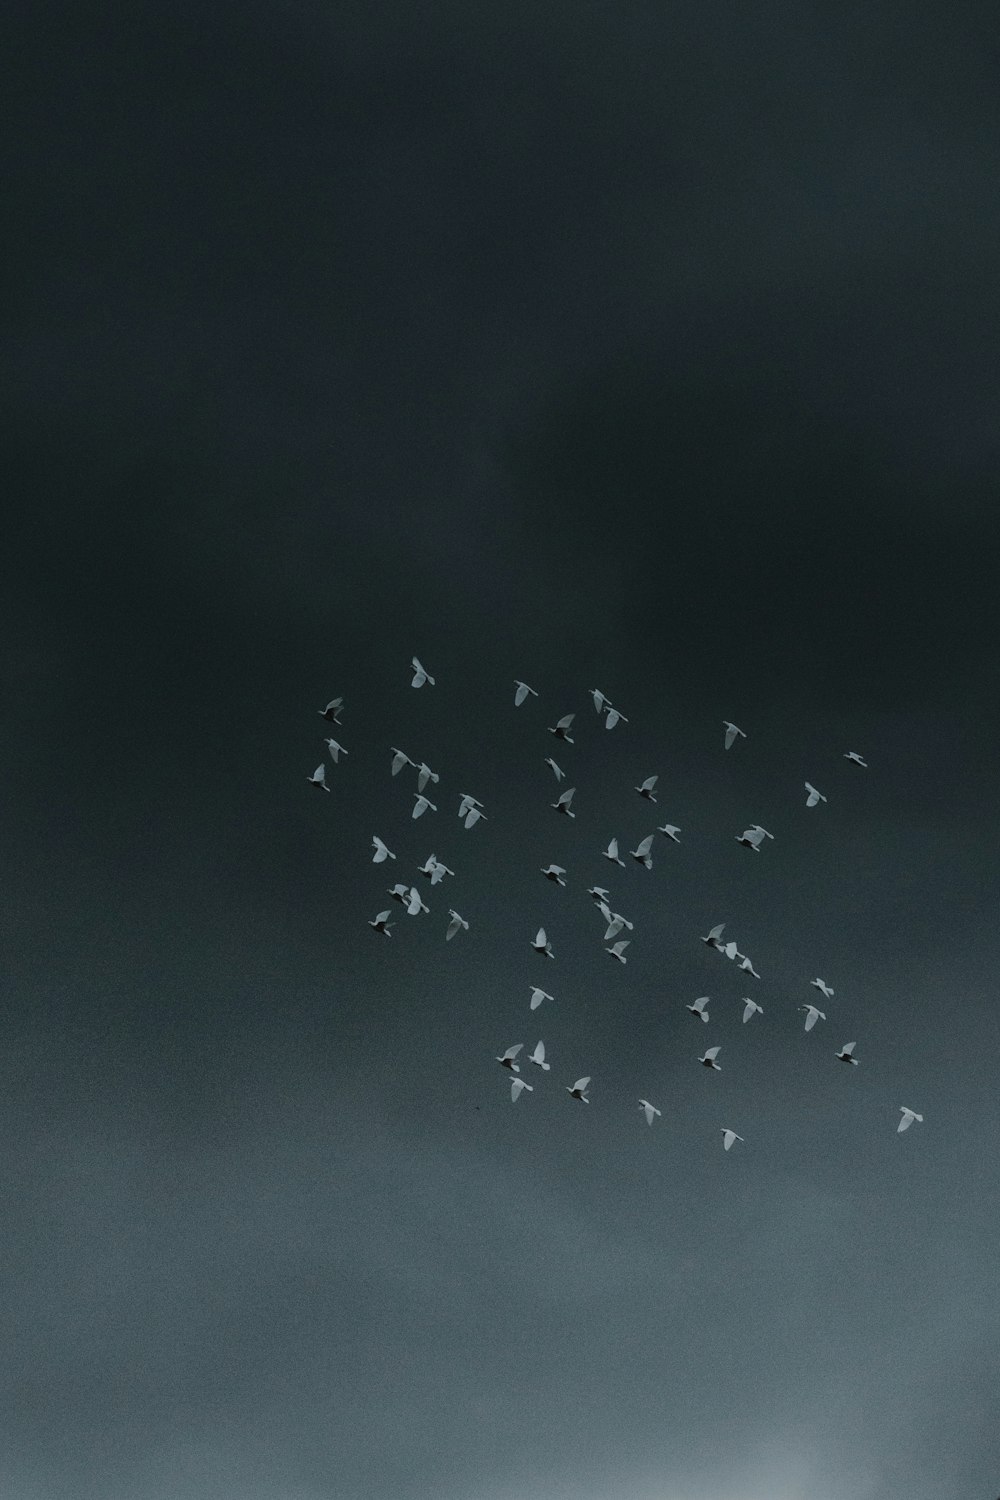 volée d’oiseaux volant sous un ciel sombre